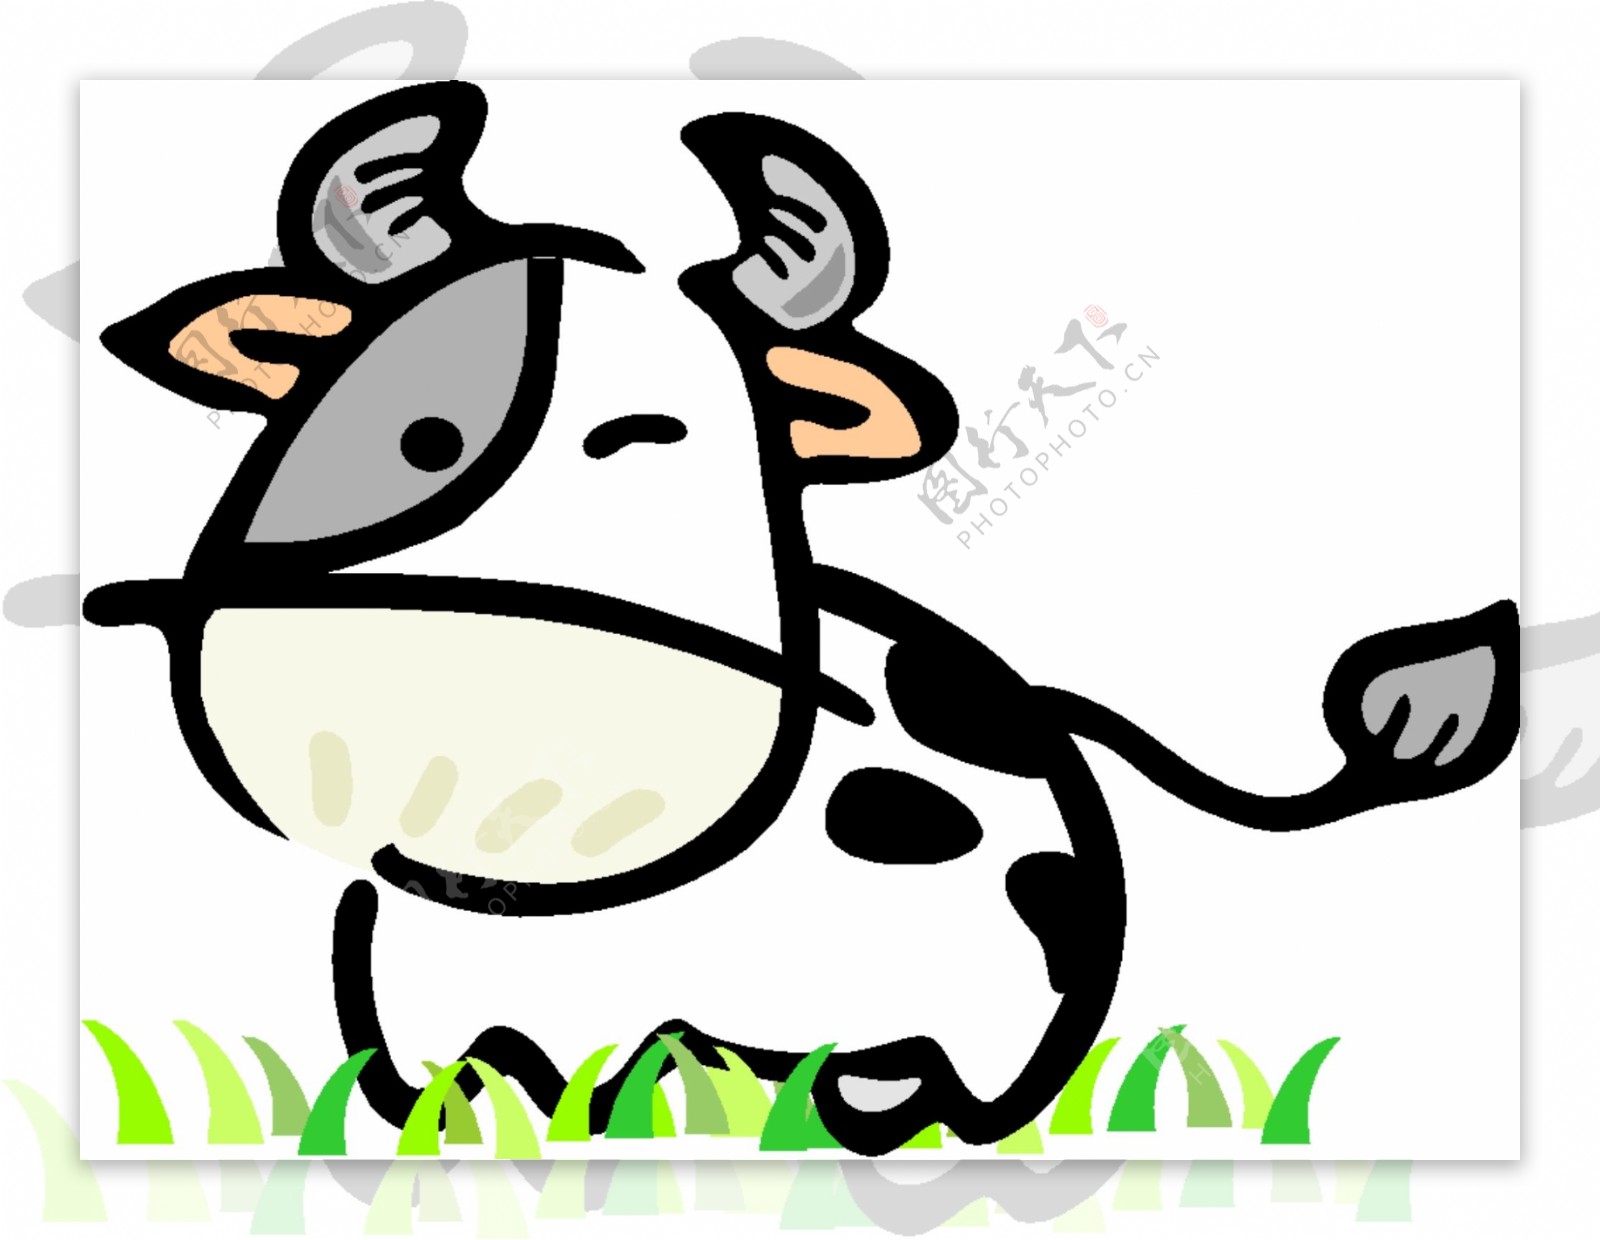 Q版中国传统12生肖丑牛